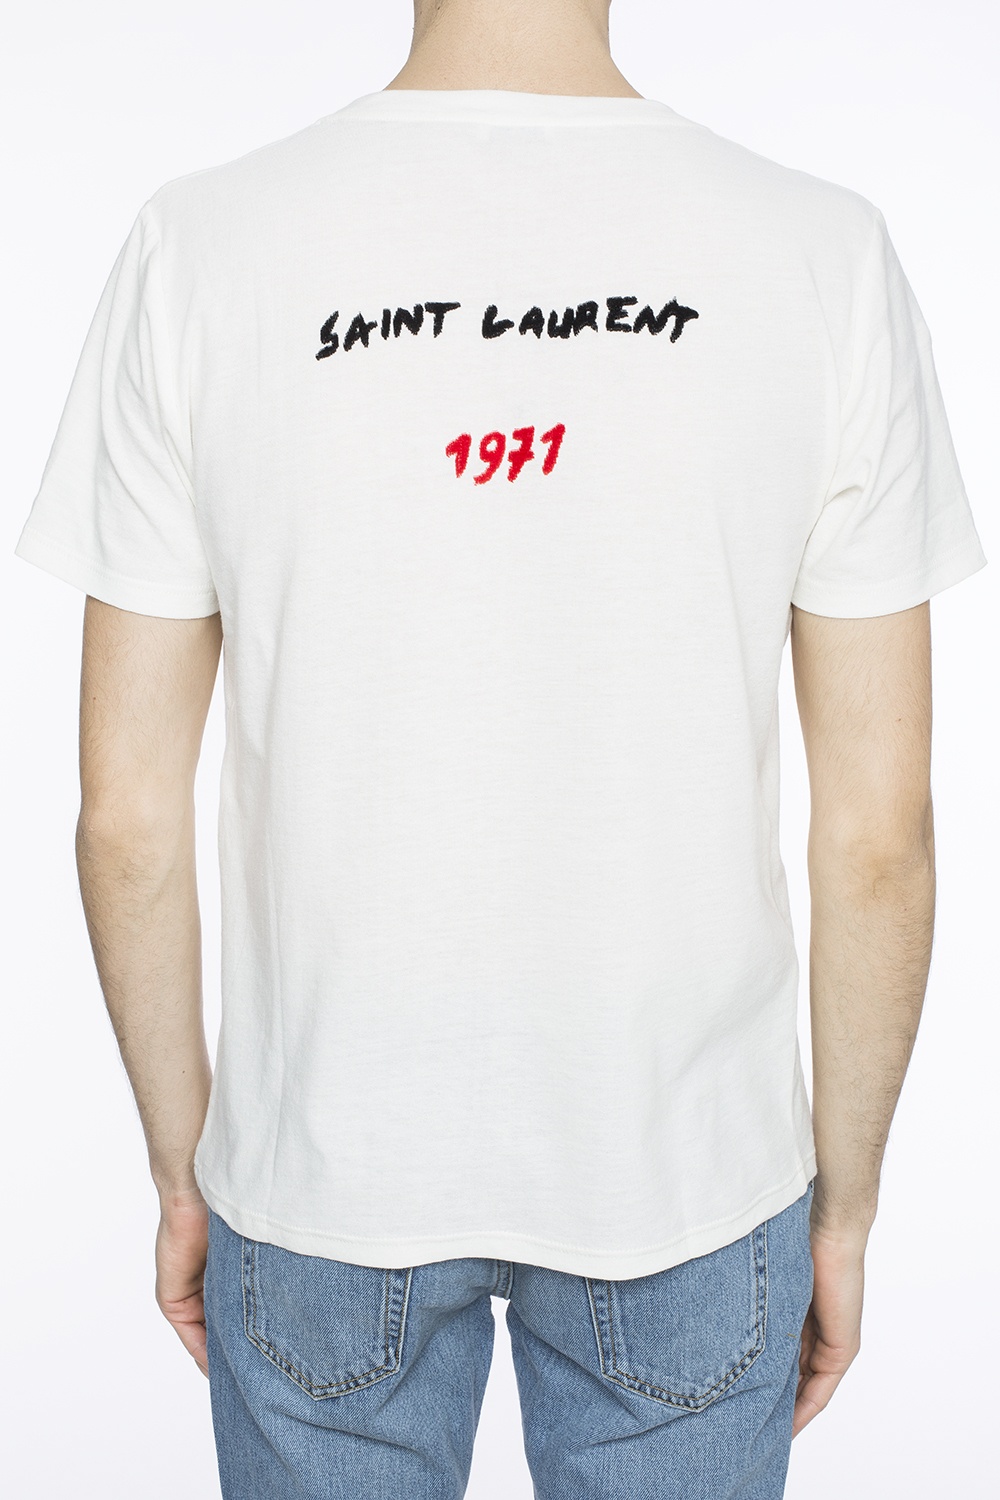 saint laurent 1971 t shirt